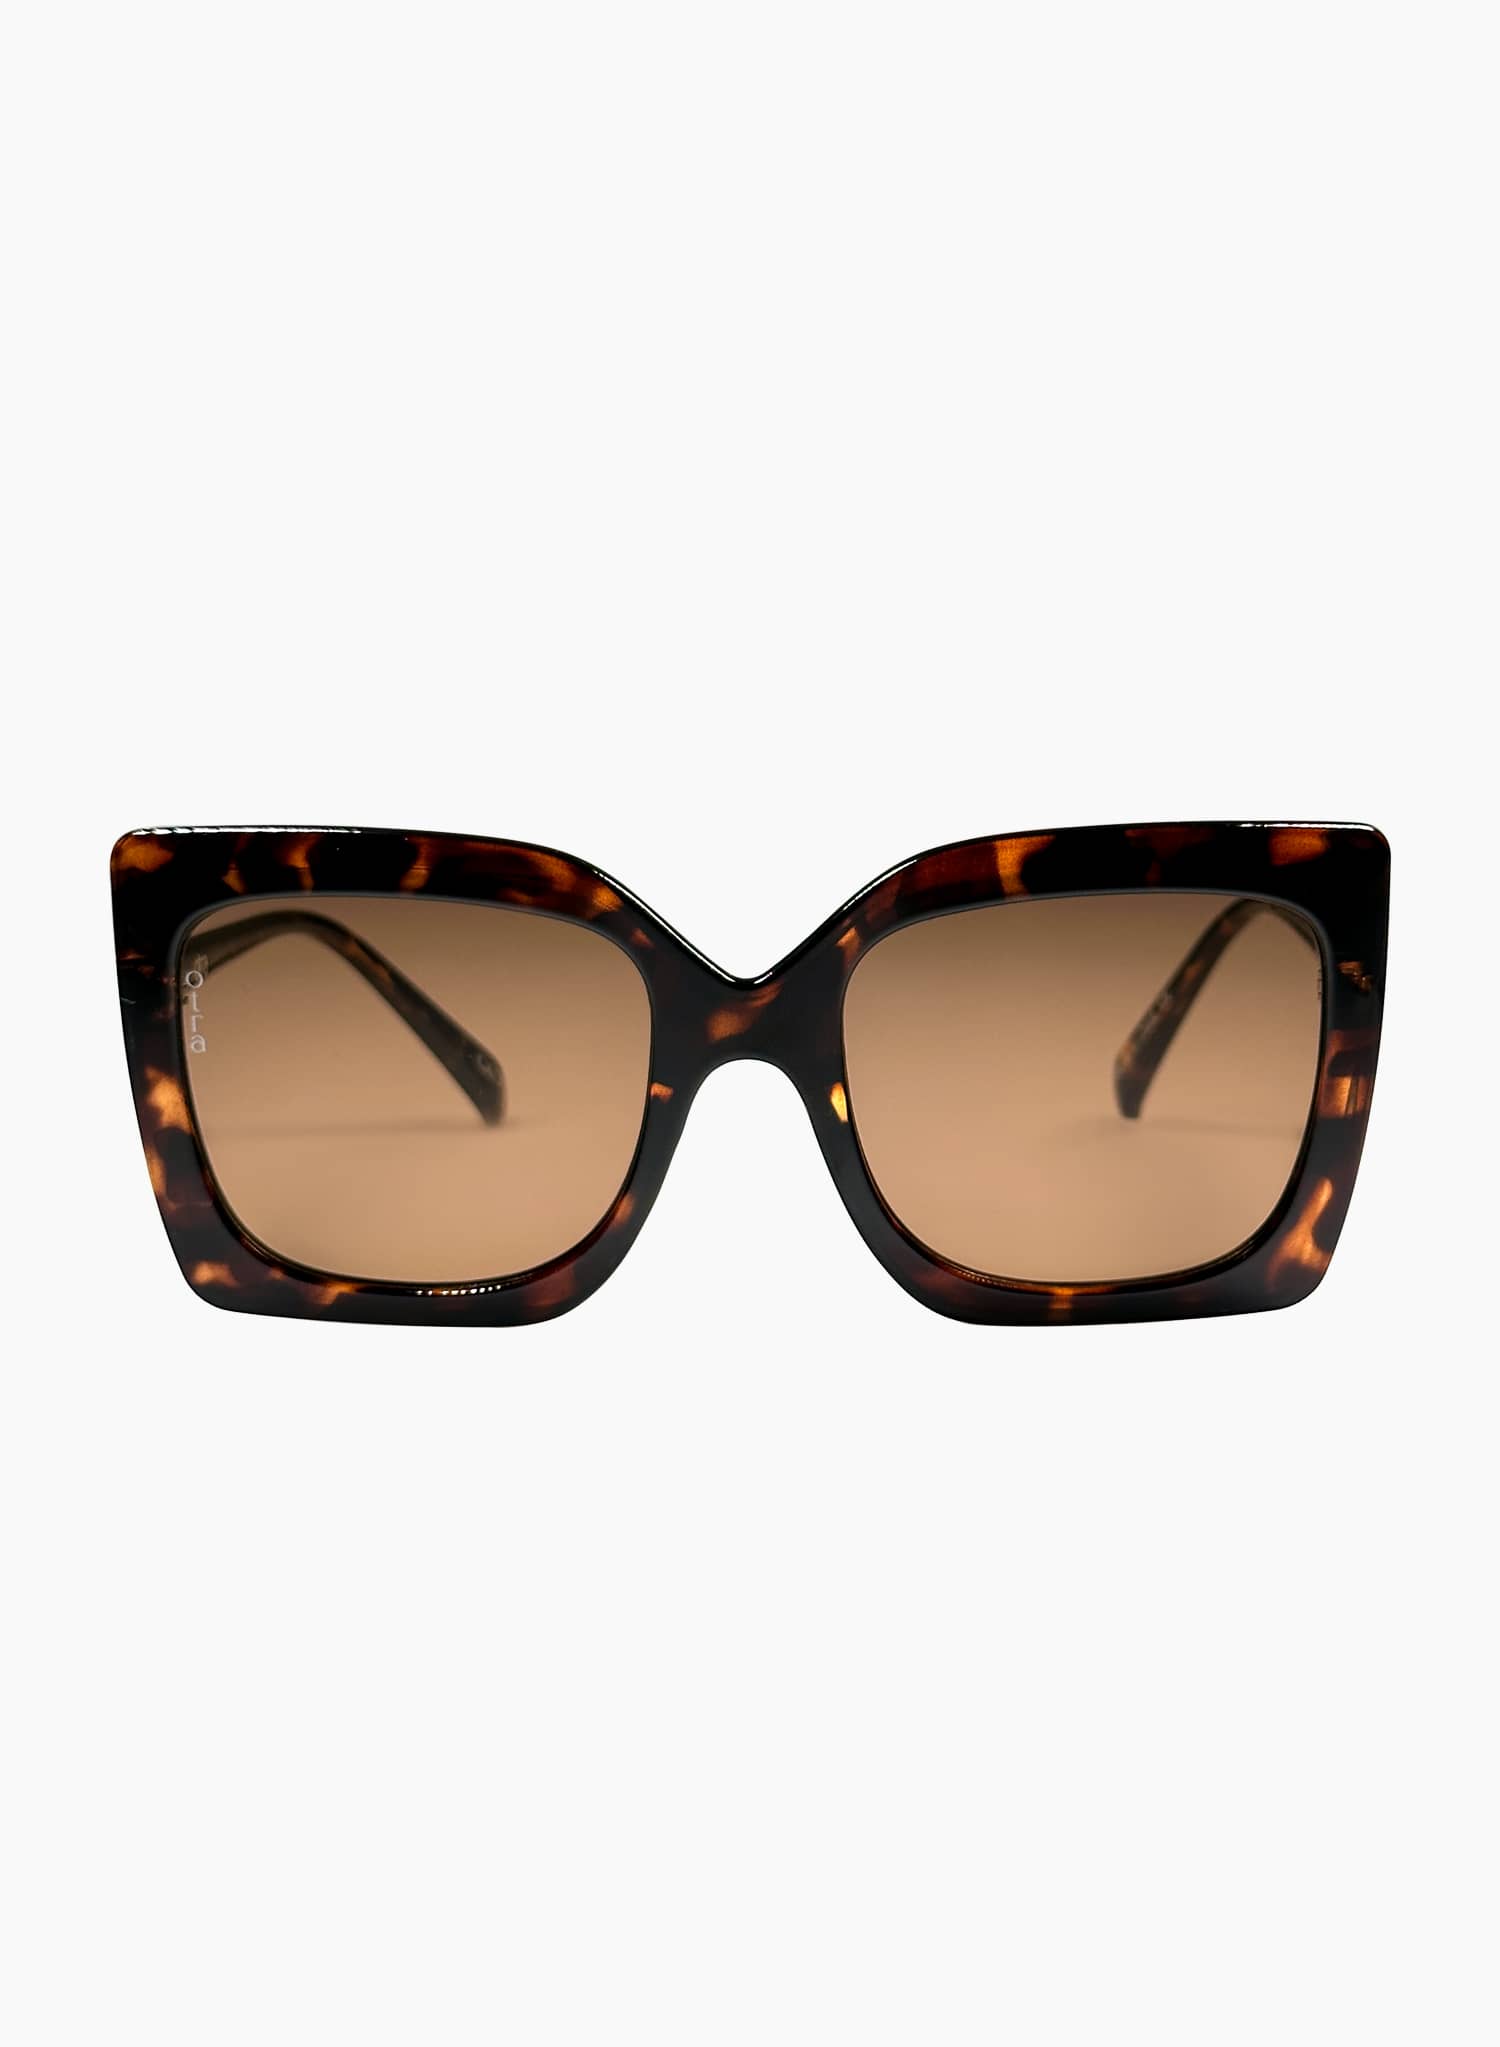 Oversized cat eye Dynasty sunglasses in brown tortoiseshell